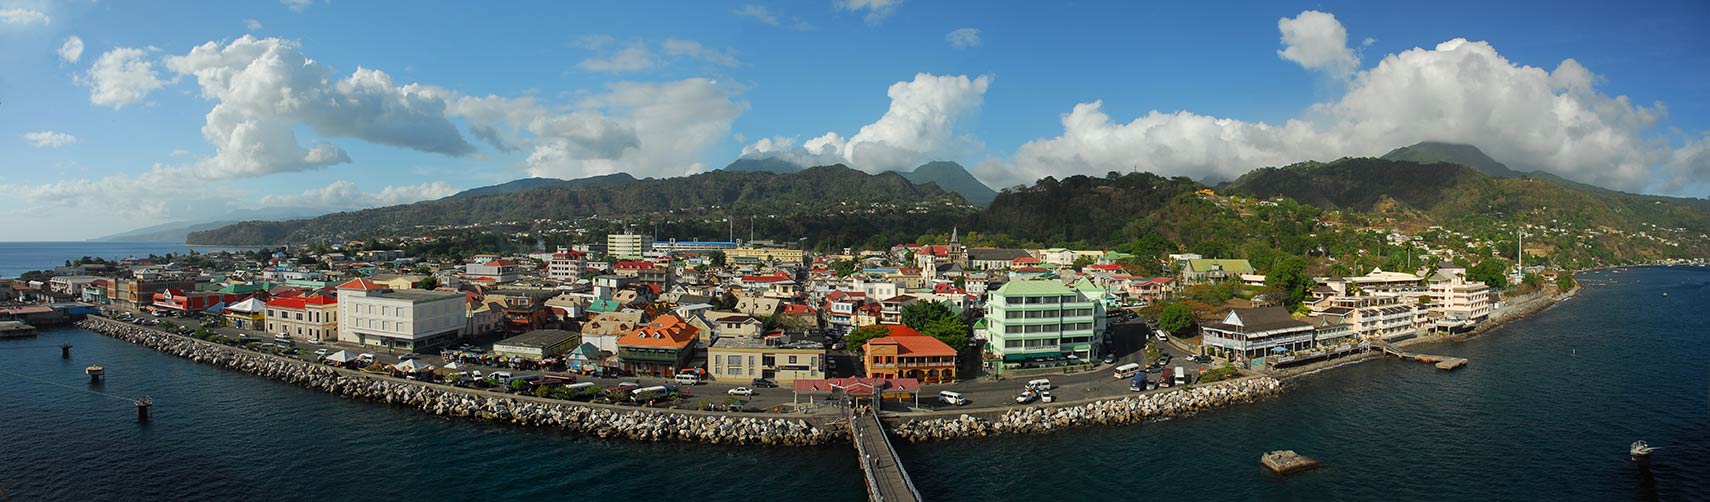 Roseau, capital of Dominica